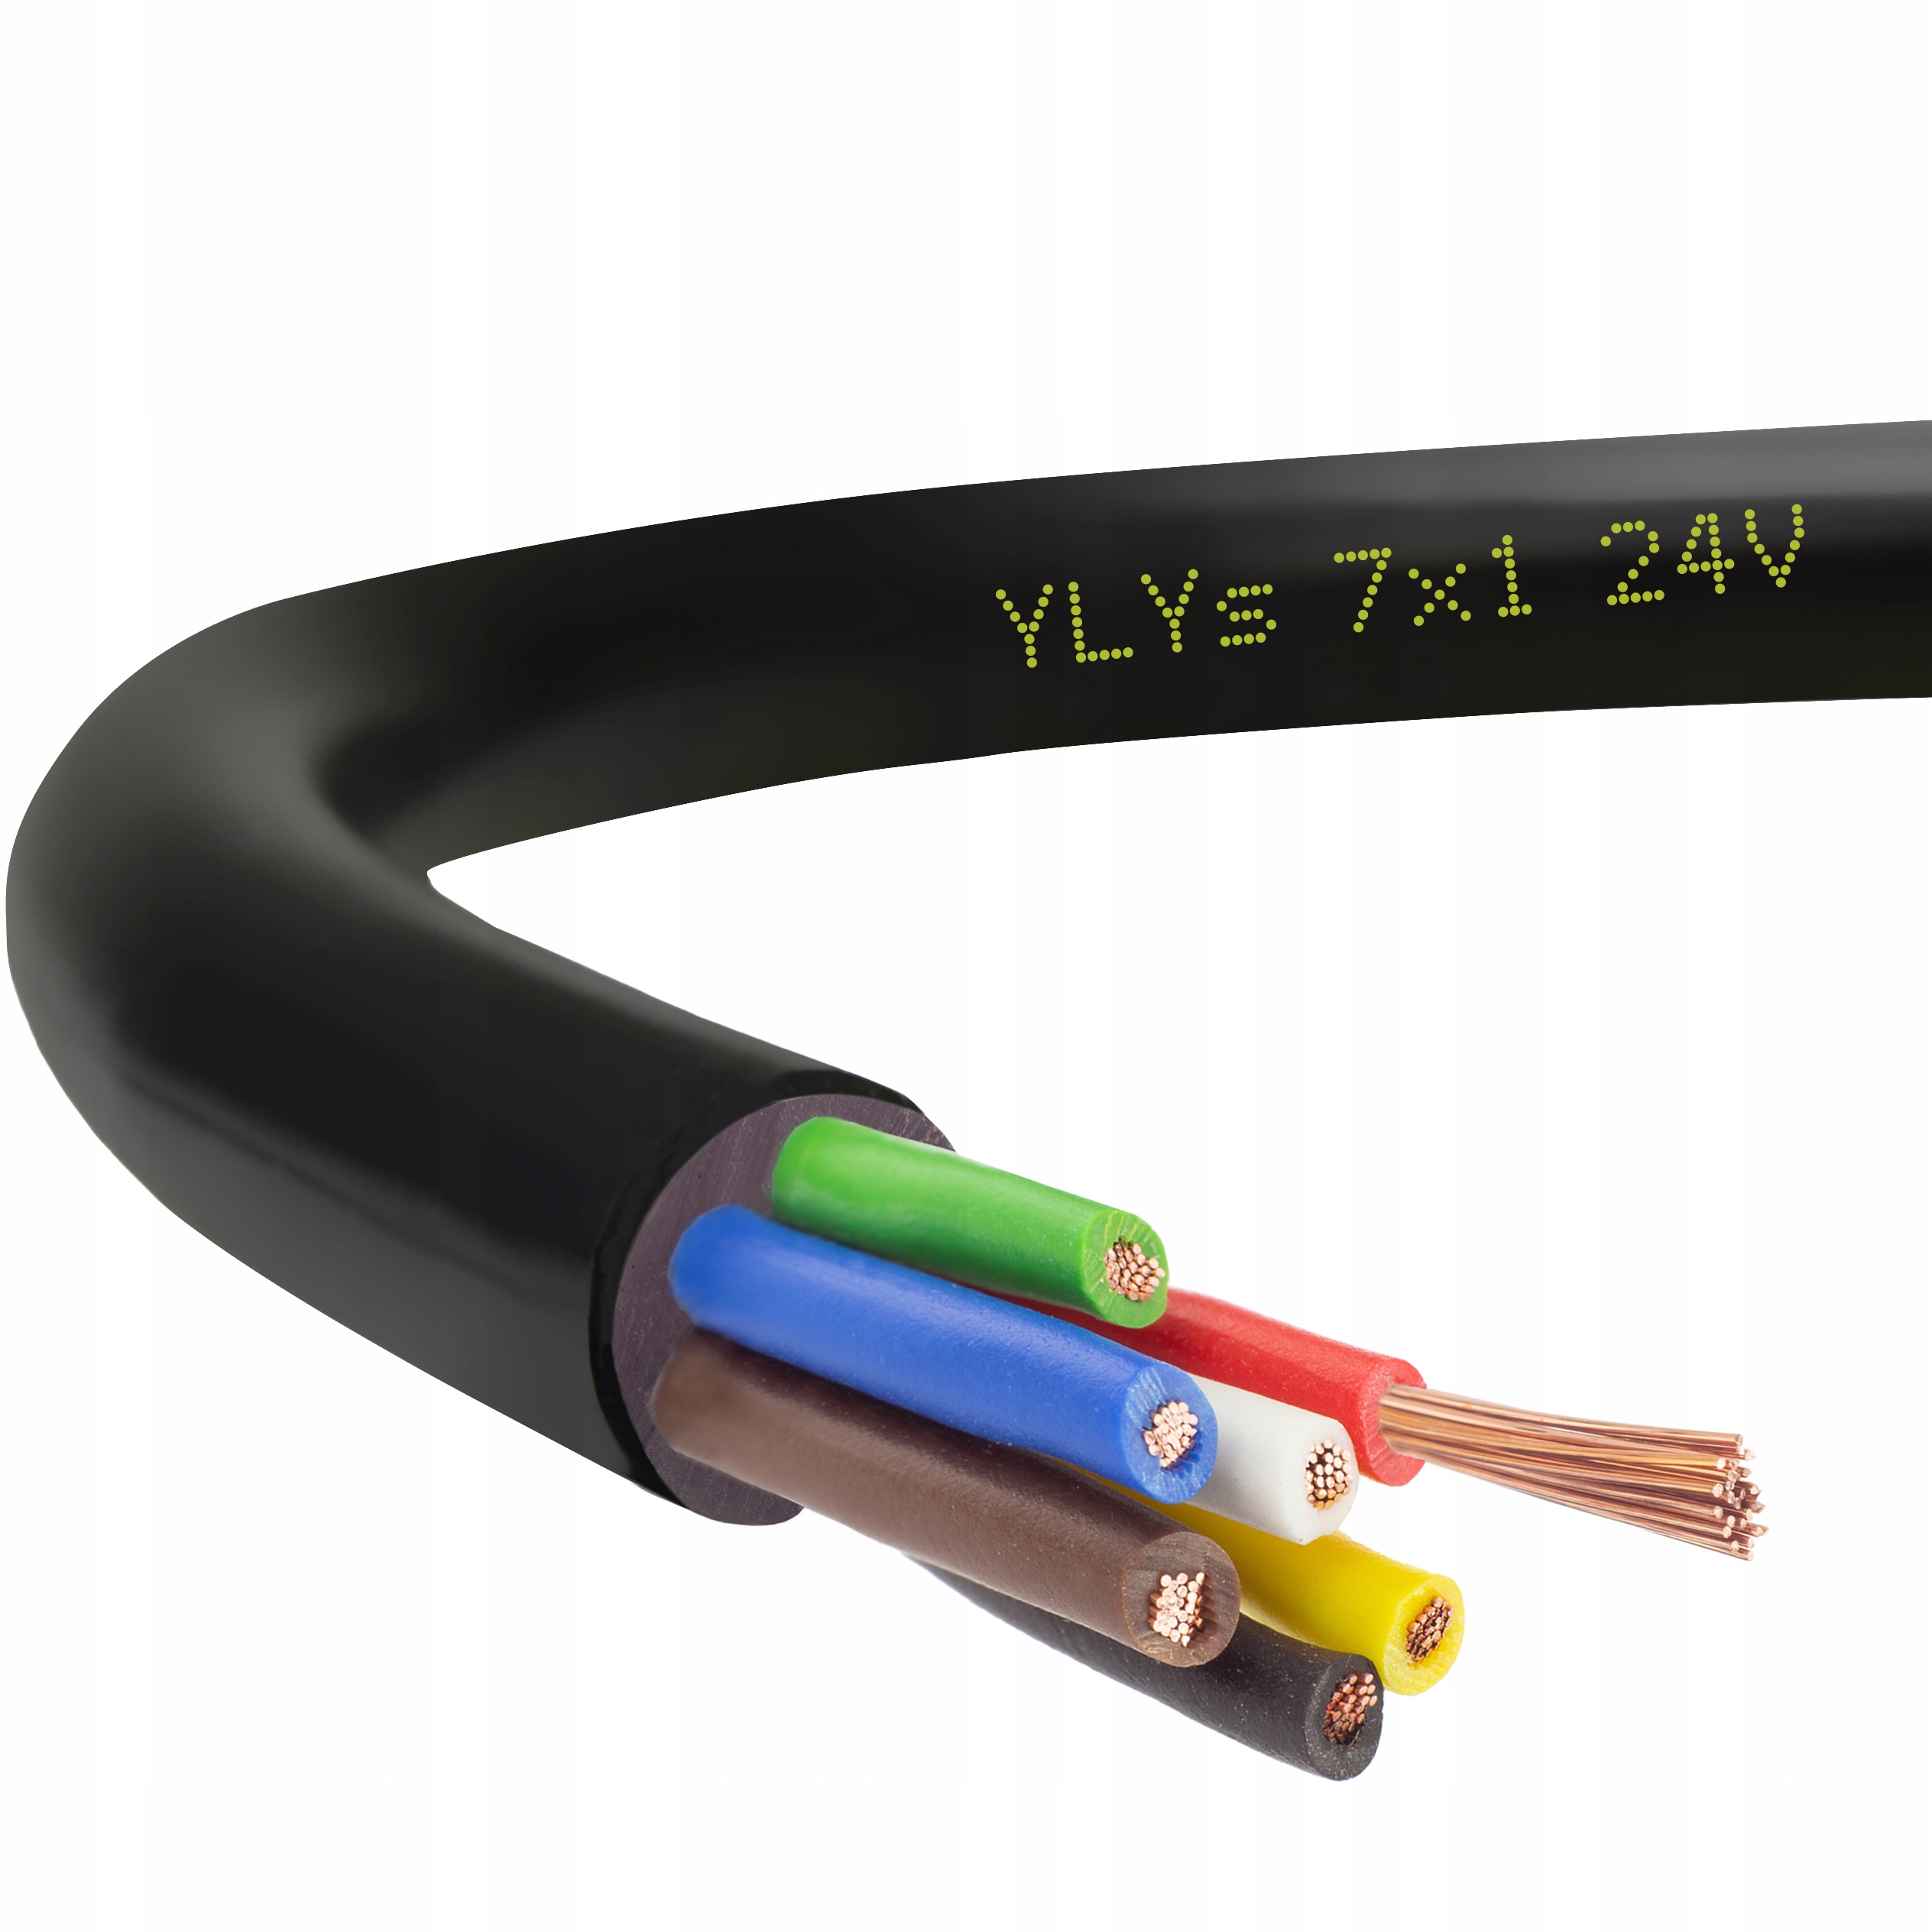 Купить кабель 0 5. Кабель автомобильный 7х0.75. Кабель 7-жильный кабель YLYS 6x1мм. Кабельный кабель 7 Life Vein YLYS 6x1 + 1,5 мм. Кабель кабель 7 жильный кабель жил YLYS 6x1 + 1,5 мм.